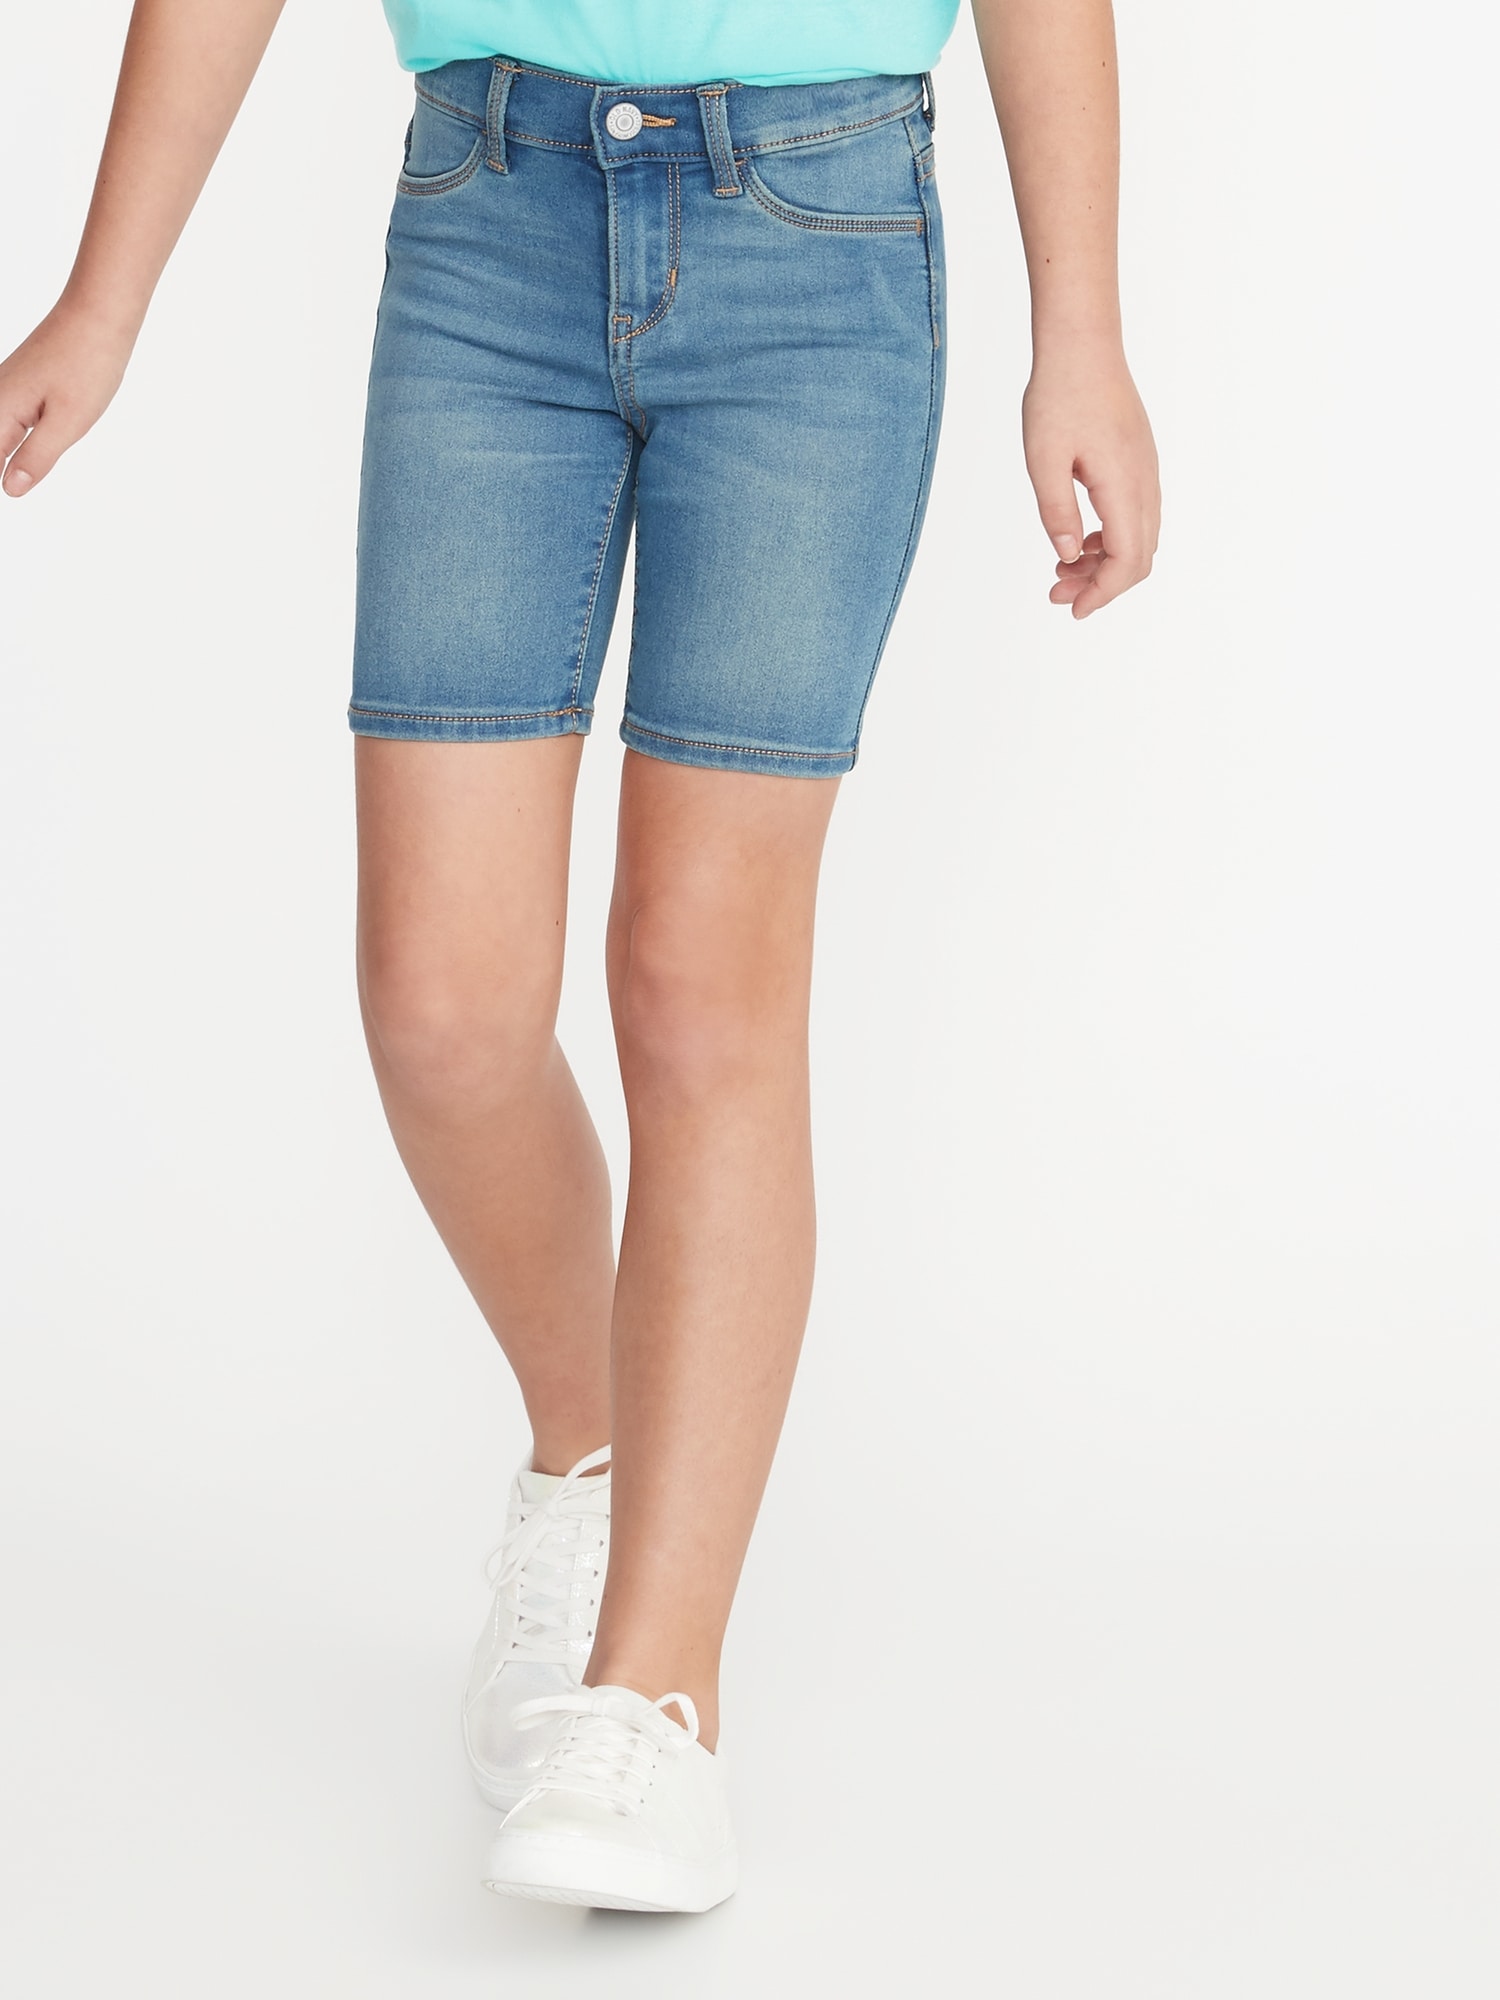 DKNY Jeans Ladies' Bermuda Short